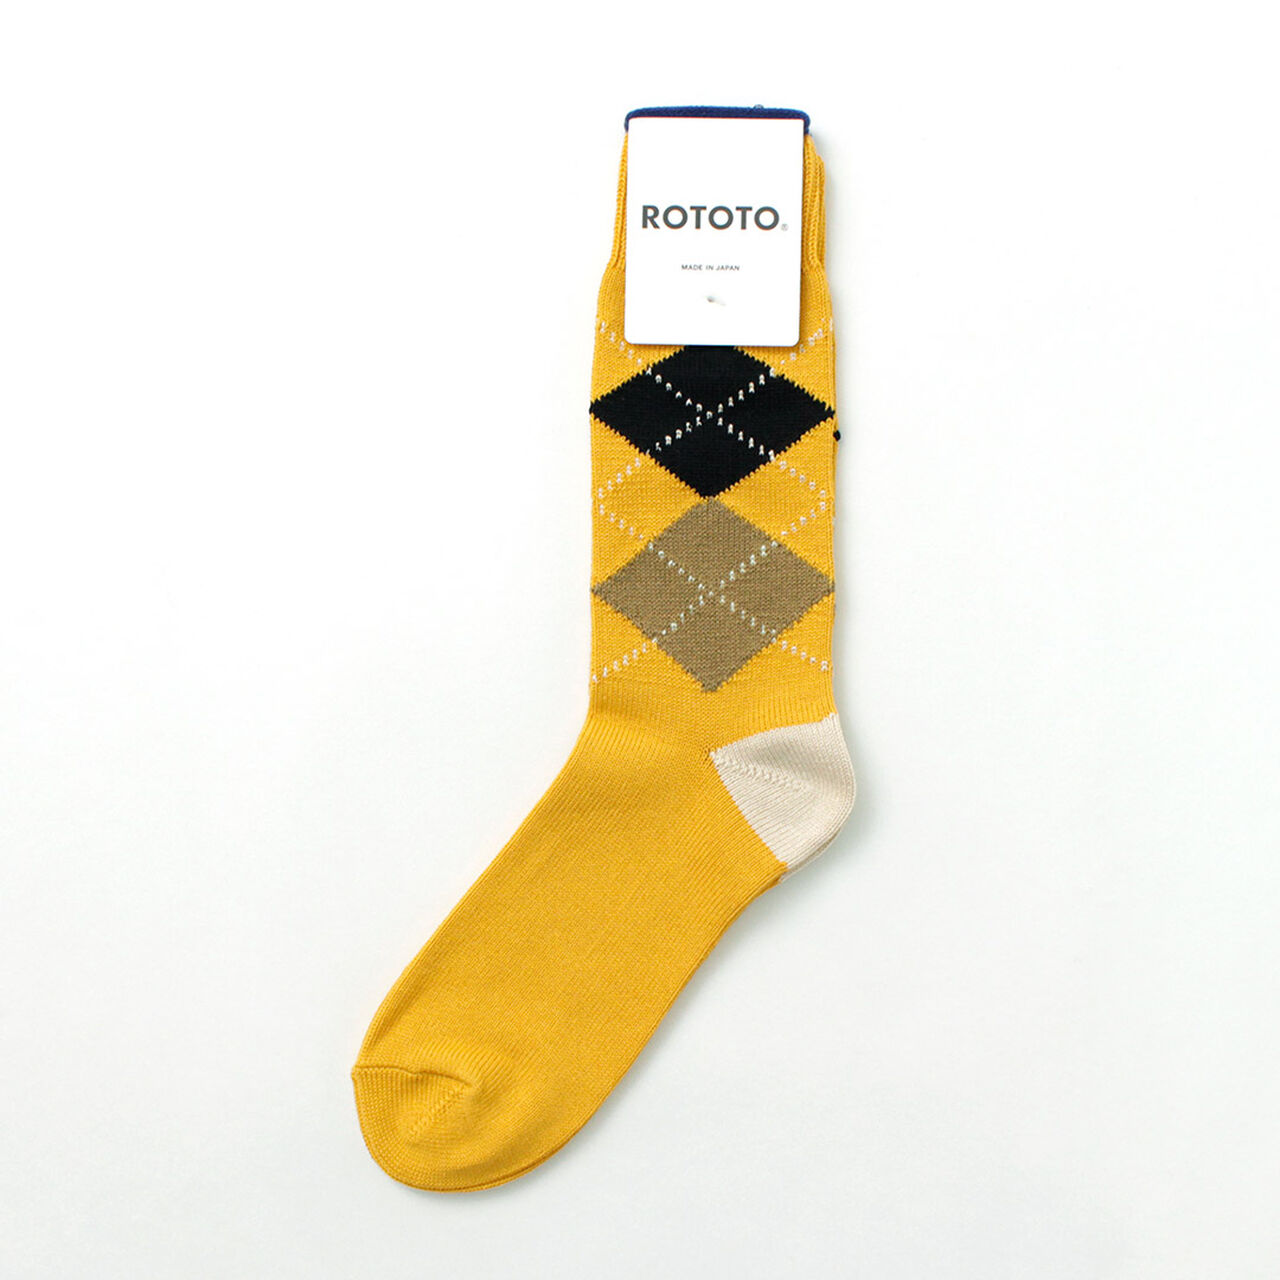 Argyle Crew Socks,Yellow_Ivory, large image number 0